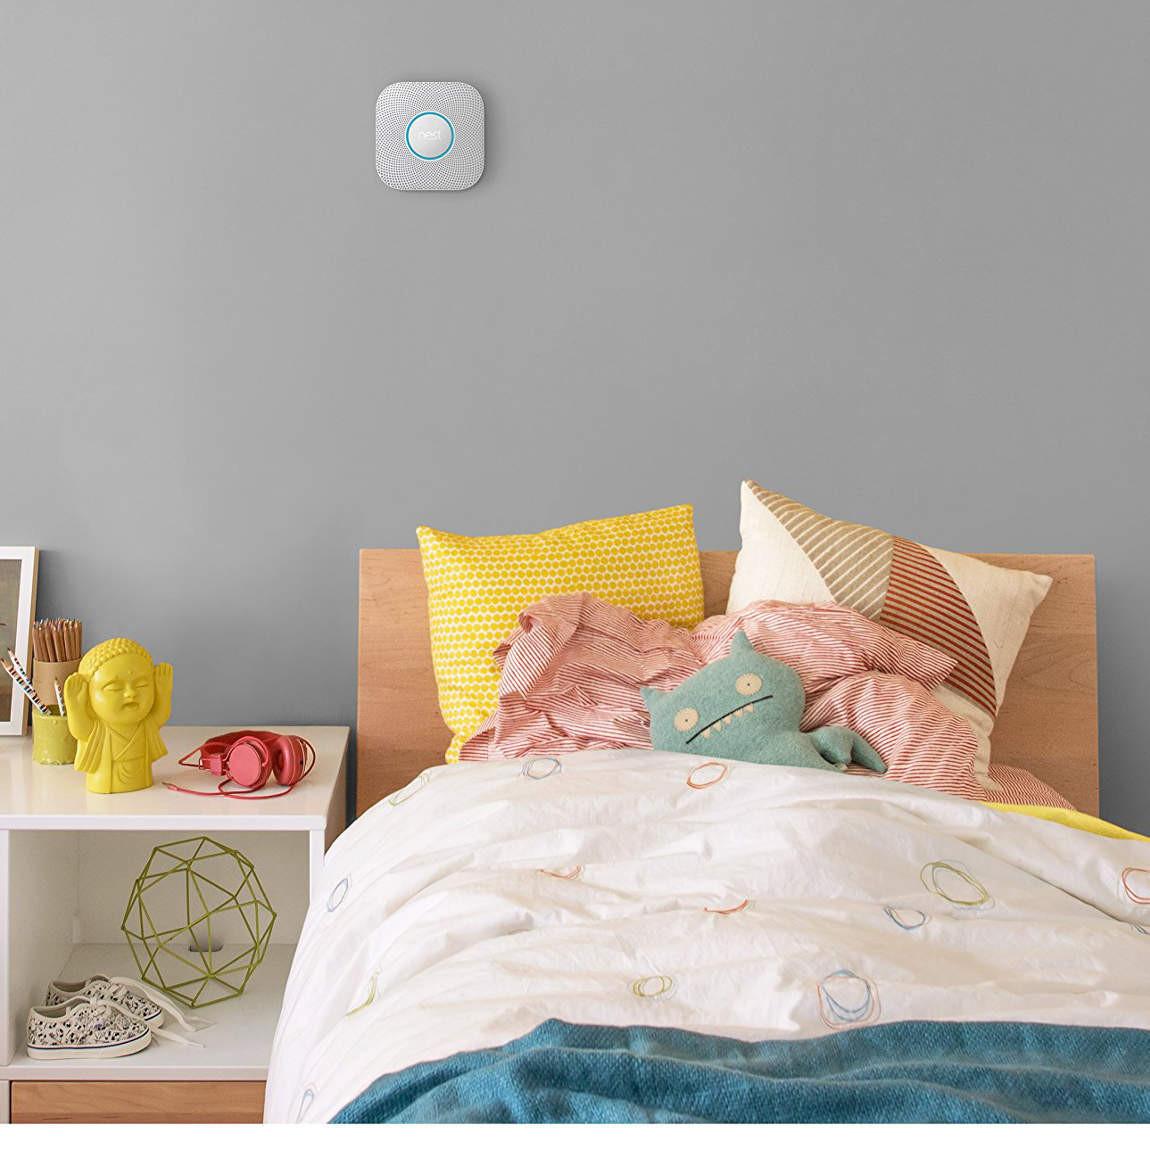 Google Nest Protect Rauch- und Kohlenmonoxidmelder, 2. Generation im Schlafzimmer